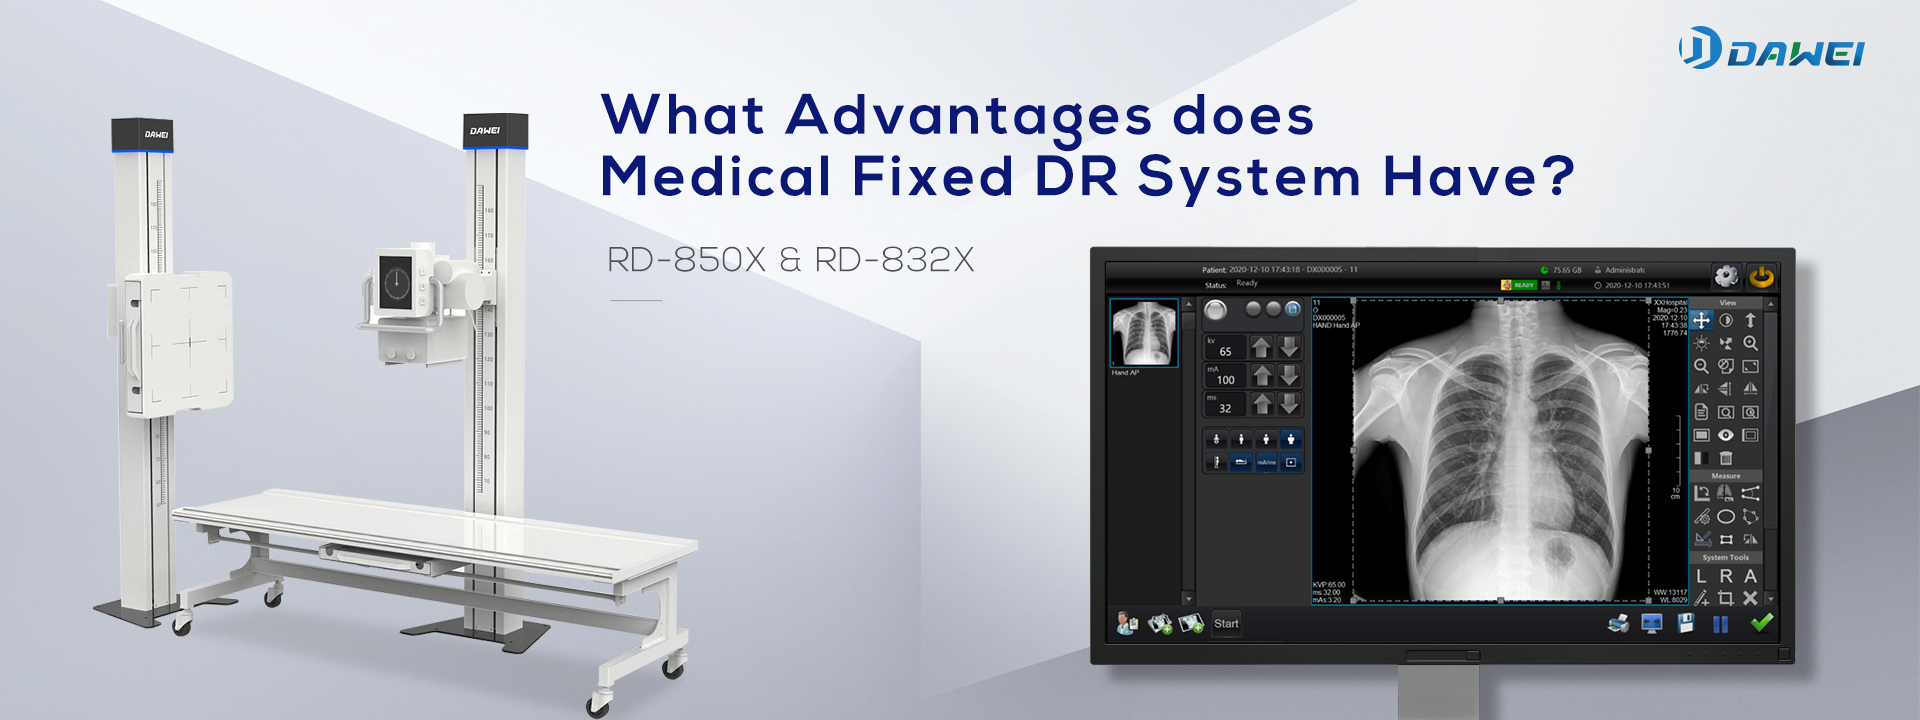 Какви предимства има медицинската фиксирана DR система?